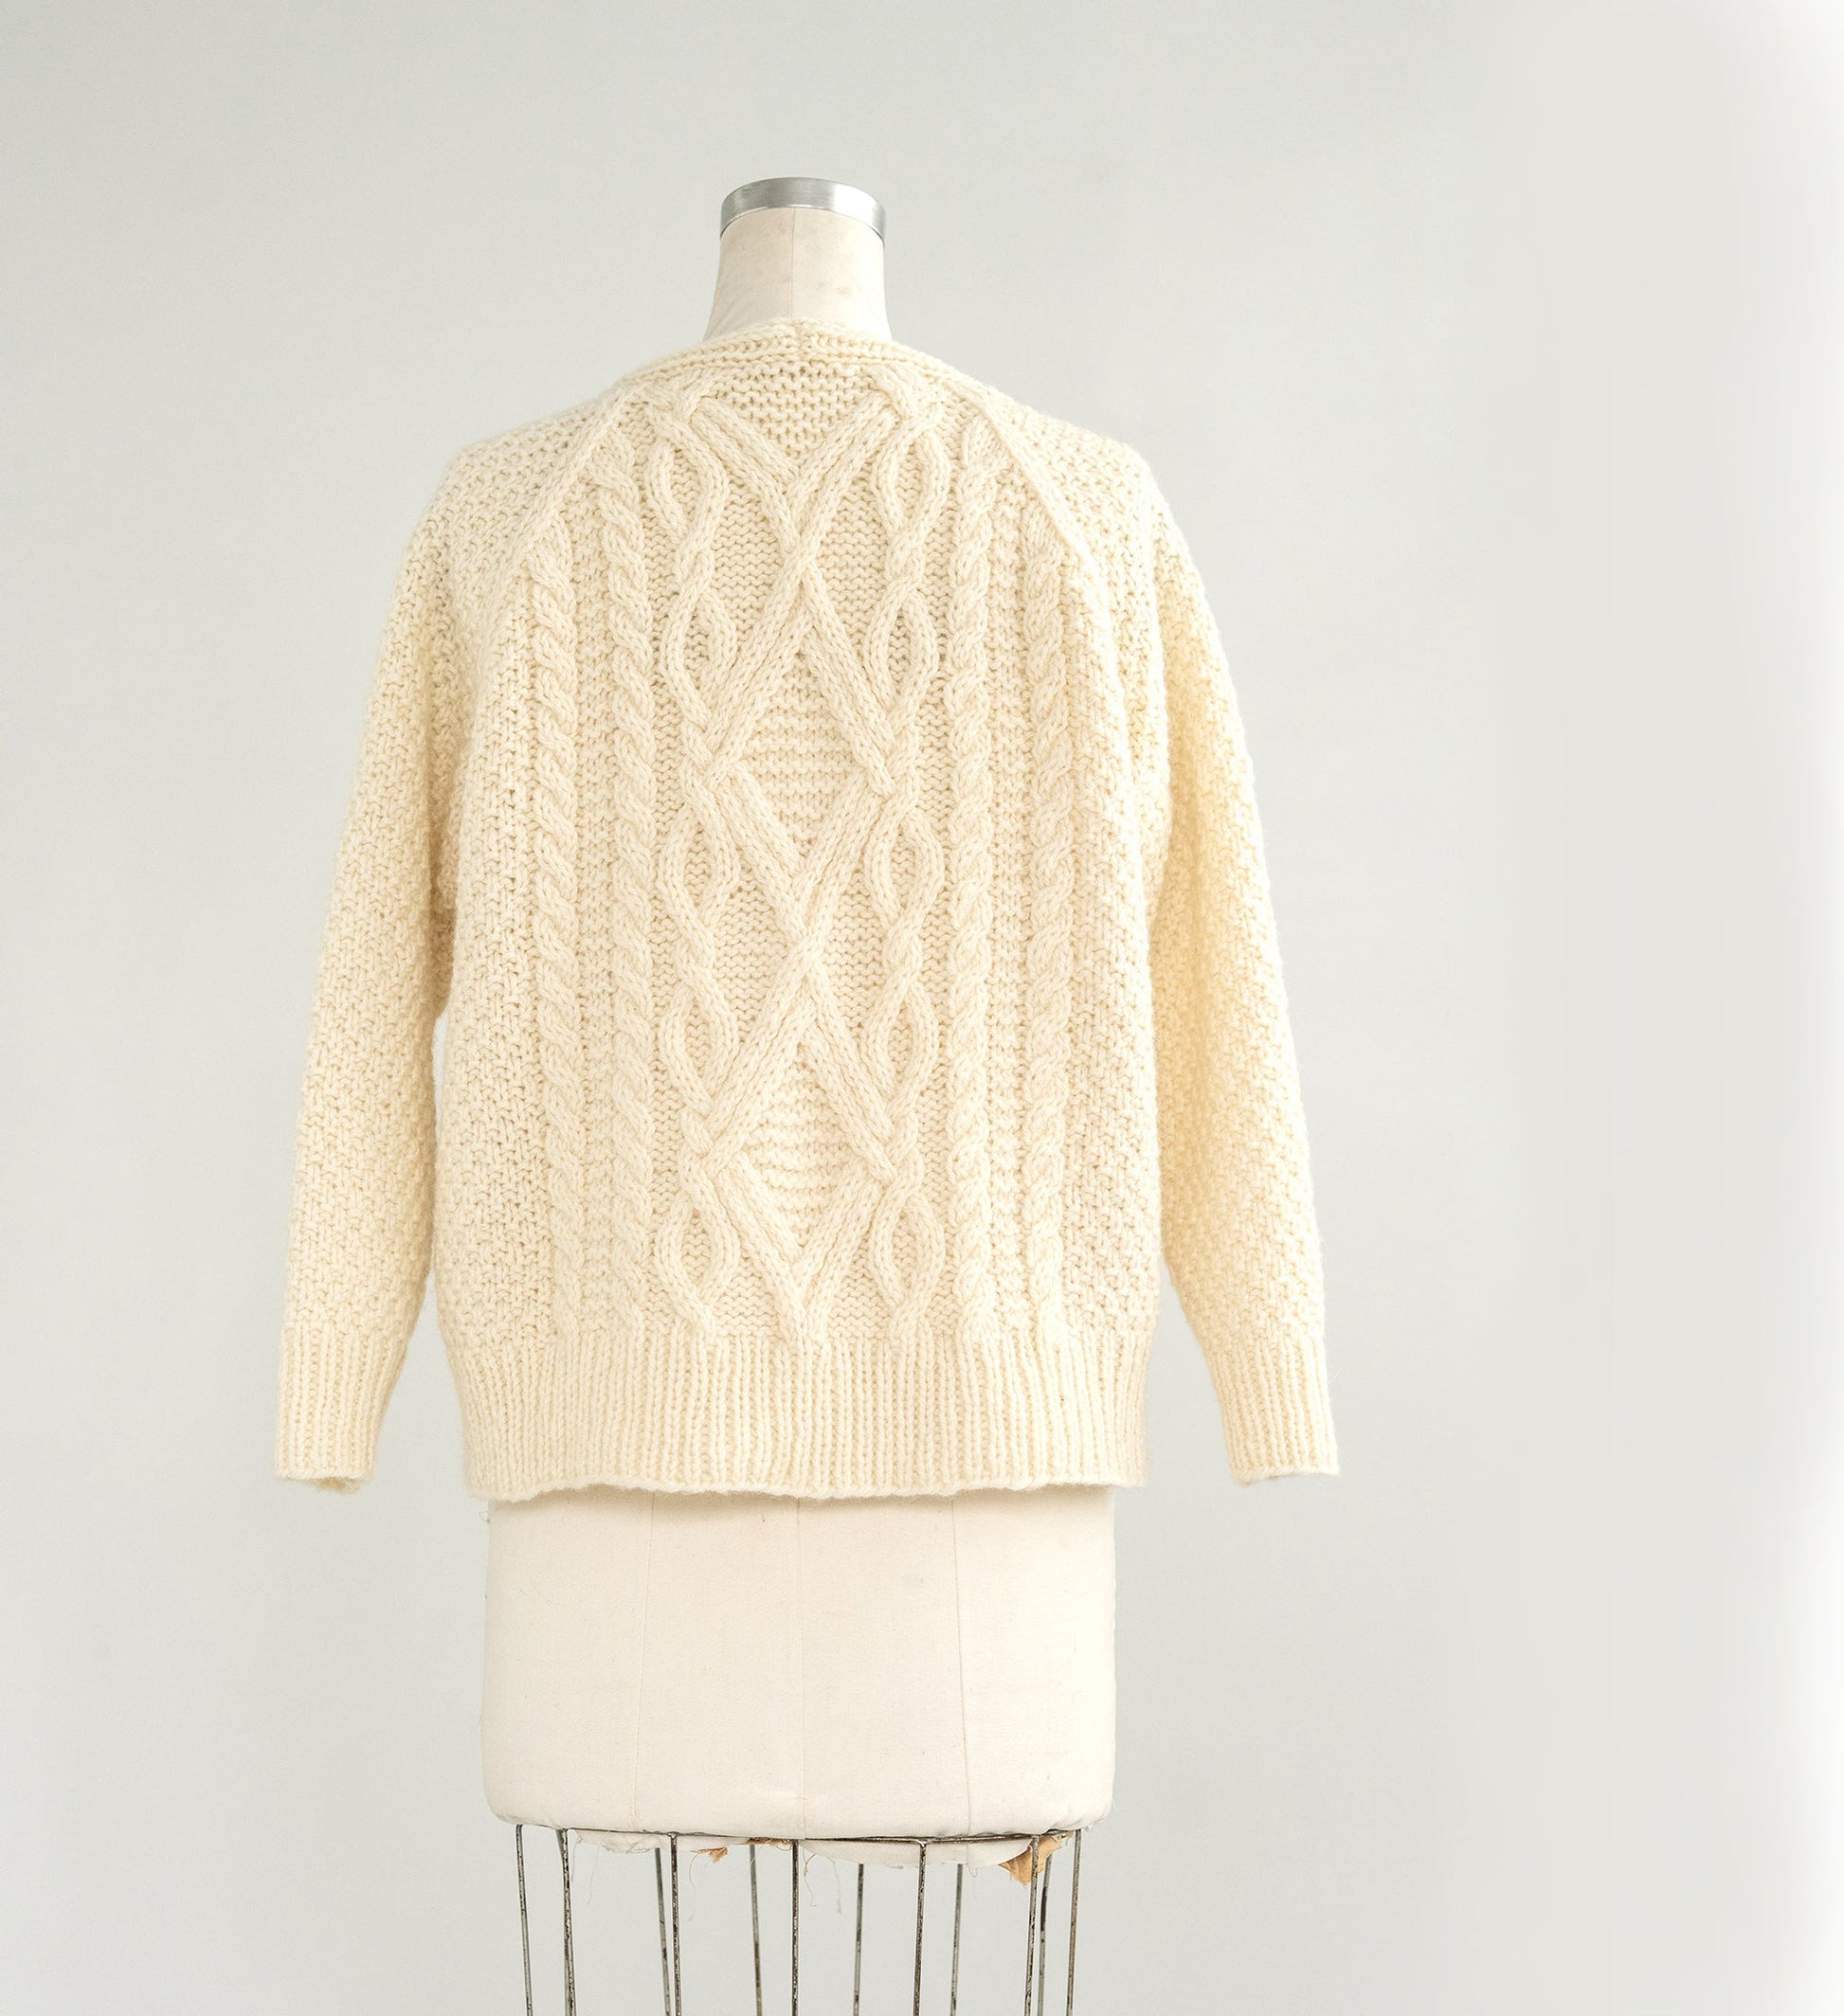 Kelbourne Woolens Winter Sweater Pattern